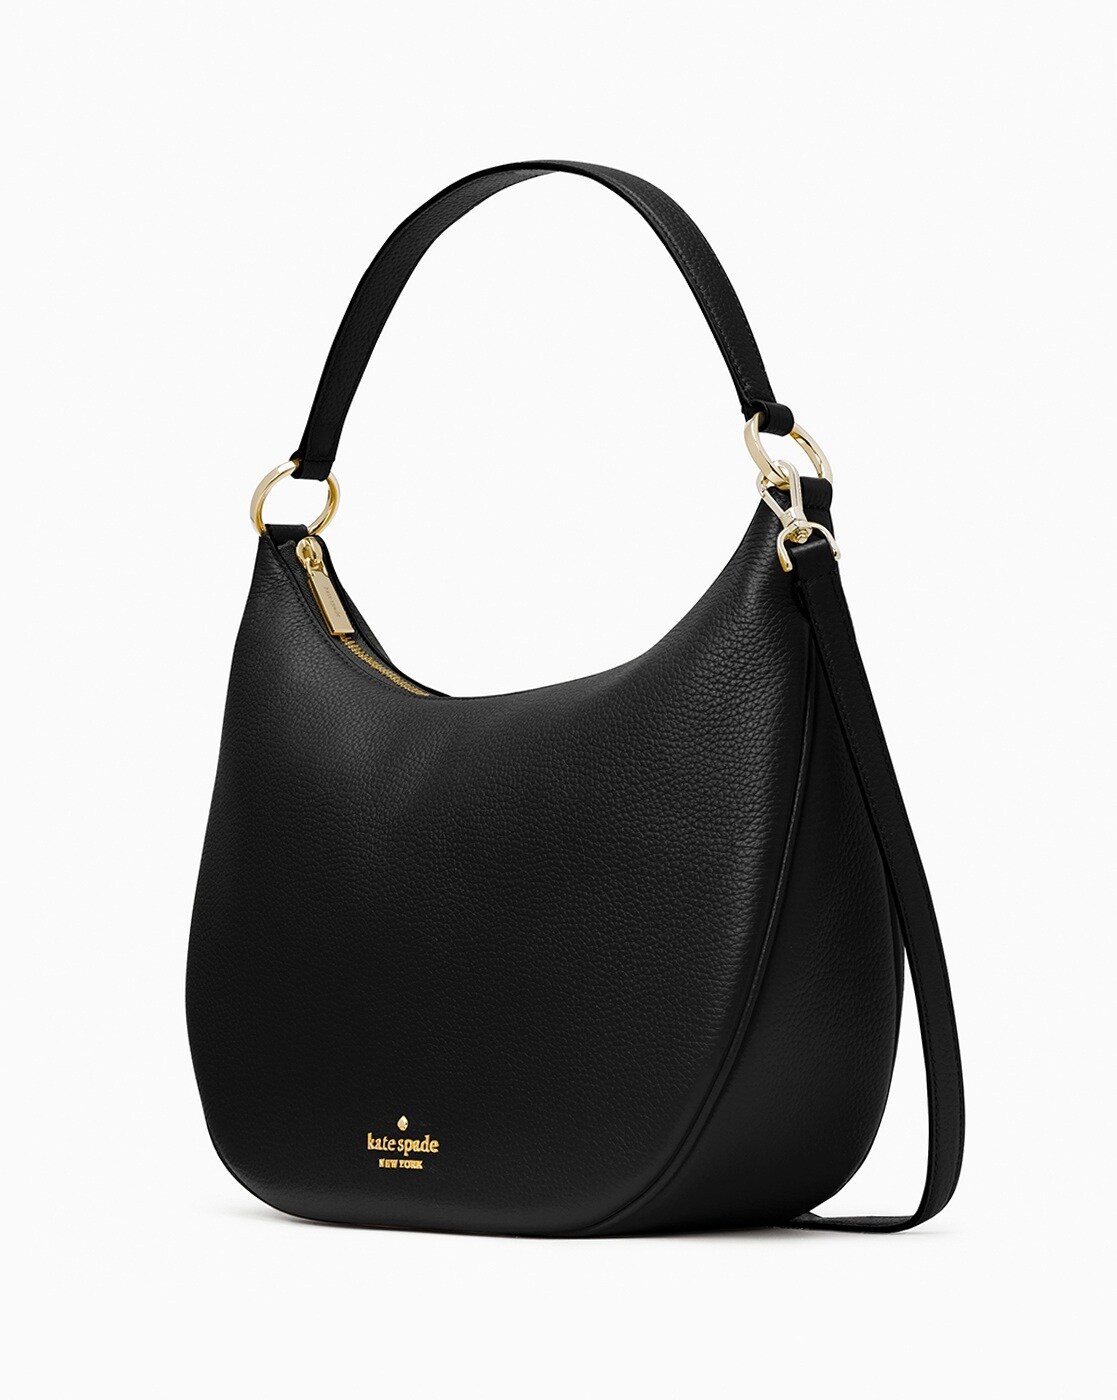 Kate Spade Black Hobo Bags | Mercari